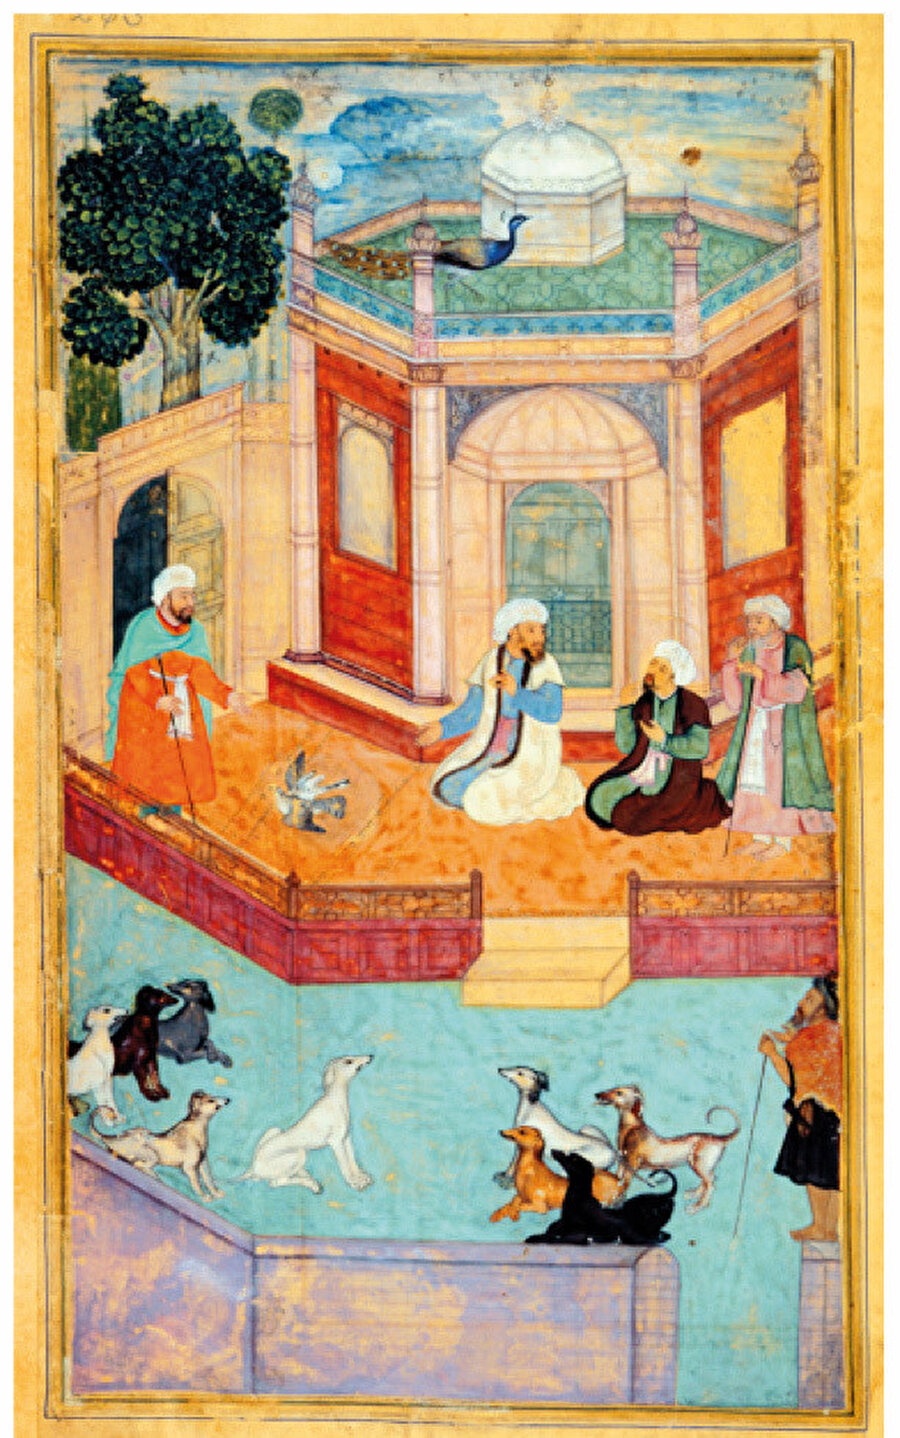 Şeyh Necmüddîn Kübrâ’nın sohbetinin kuşlara ve köpeklere tesir etmesi. Câmî, Nefahâtü’l-üns. Hindistan 1012/1603-4